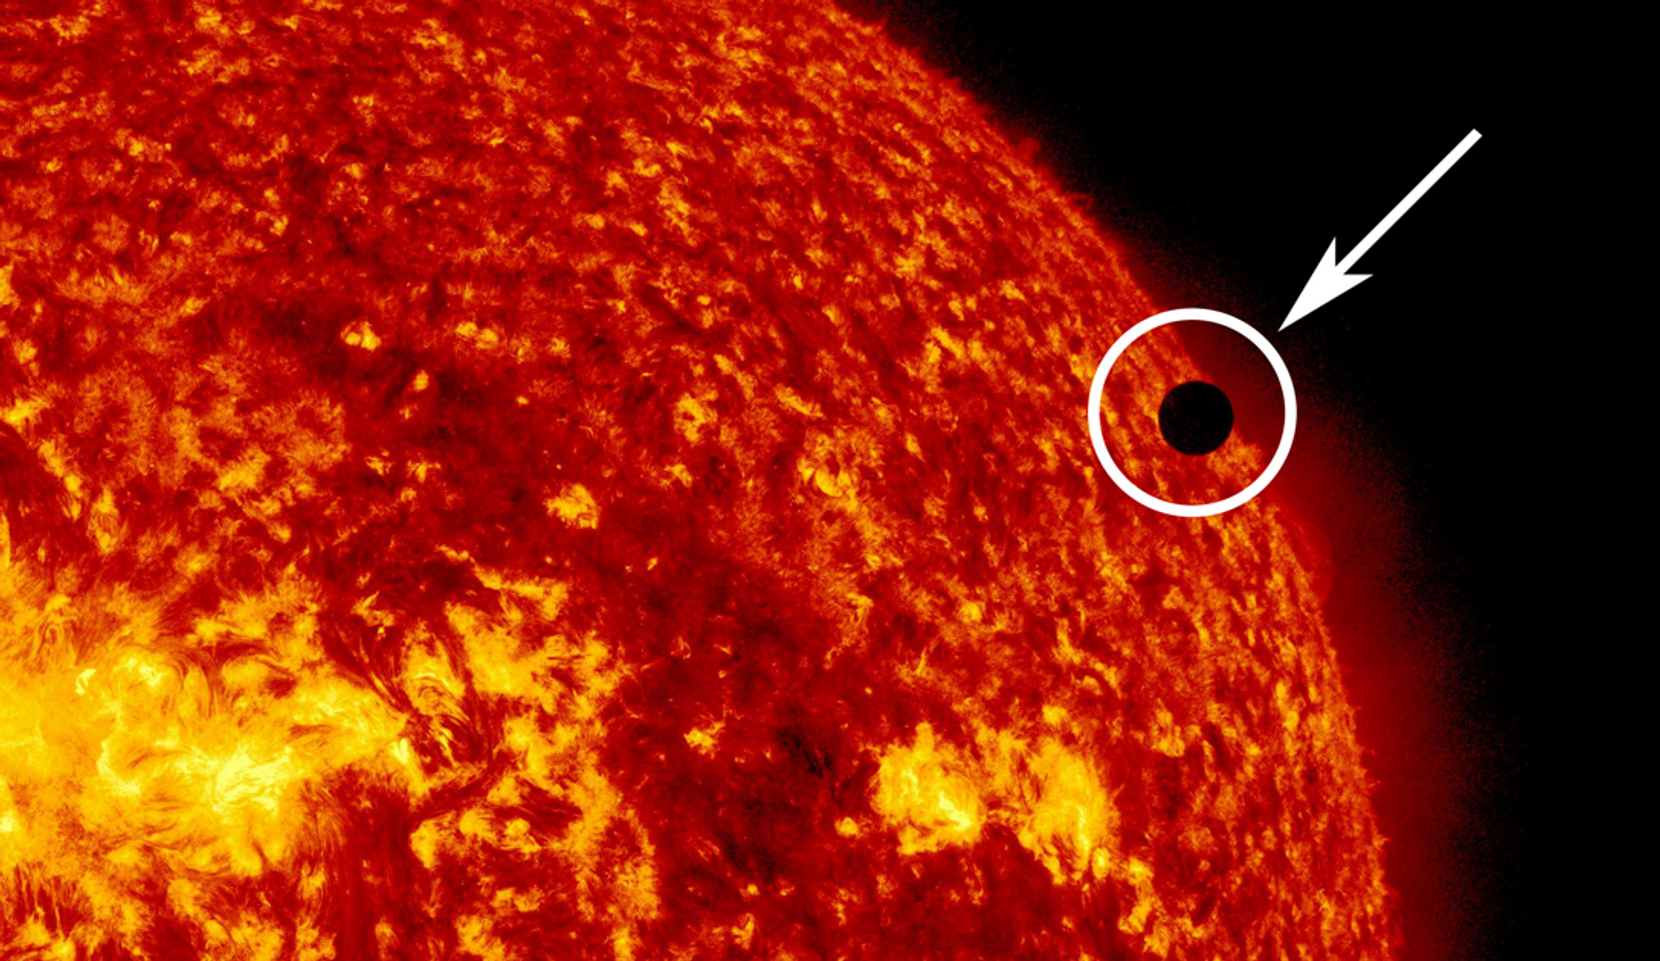 Ein Bild der Sonne mit einem kleinen schwarzen Fleck, der die Venus darstellt.